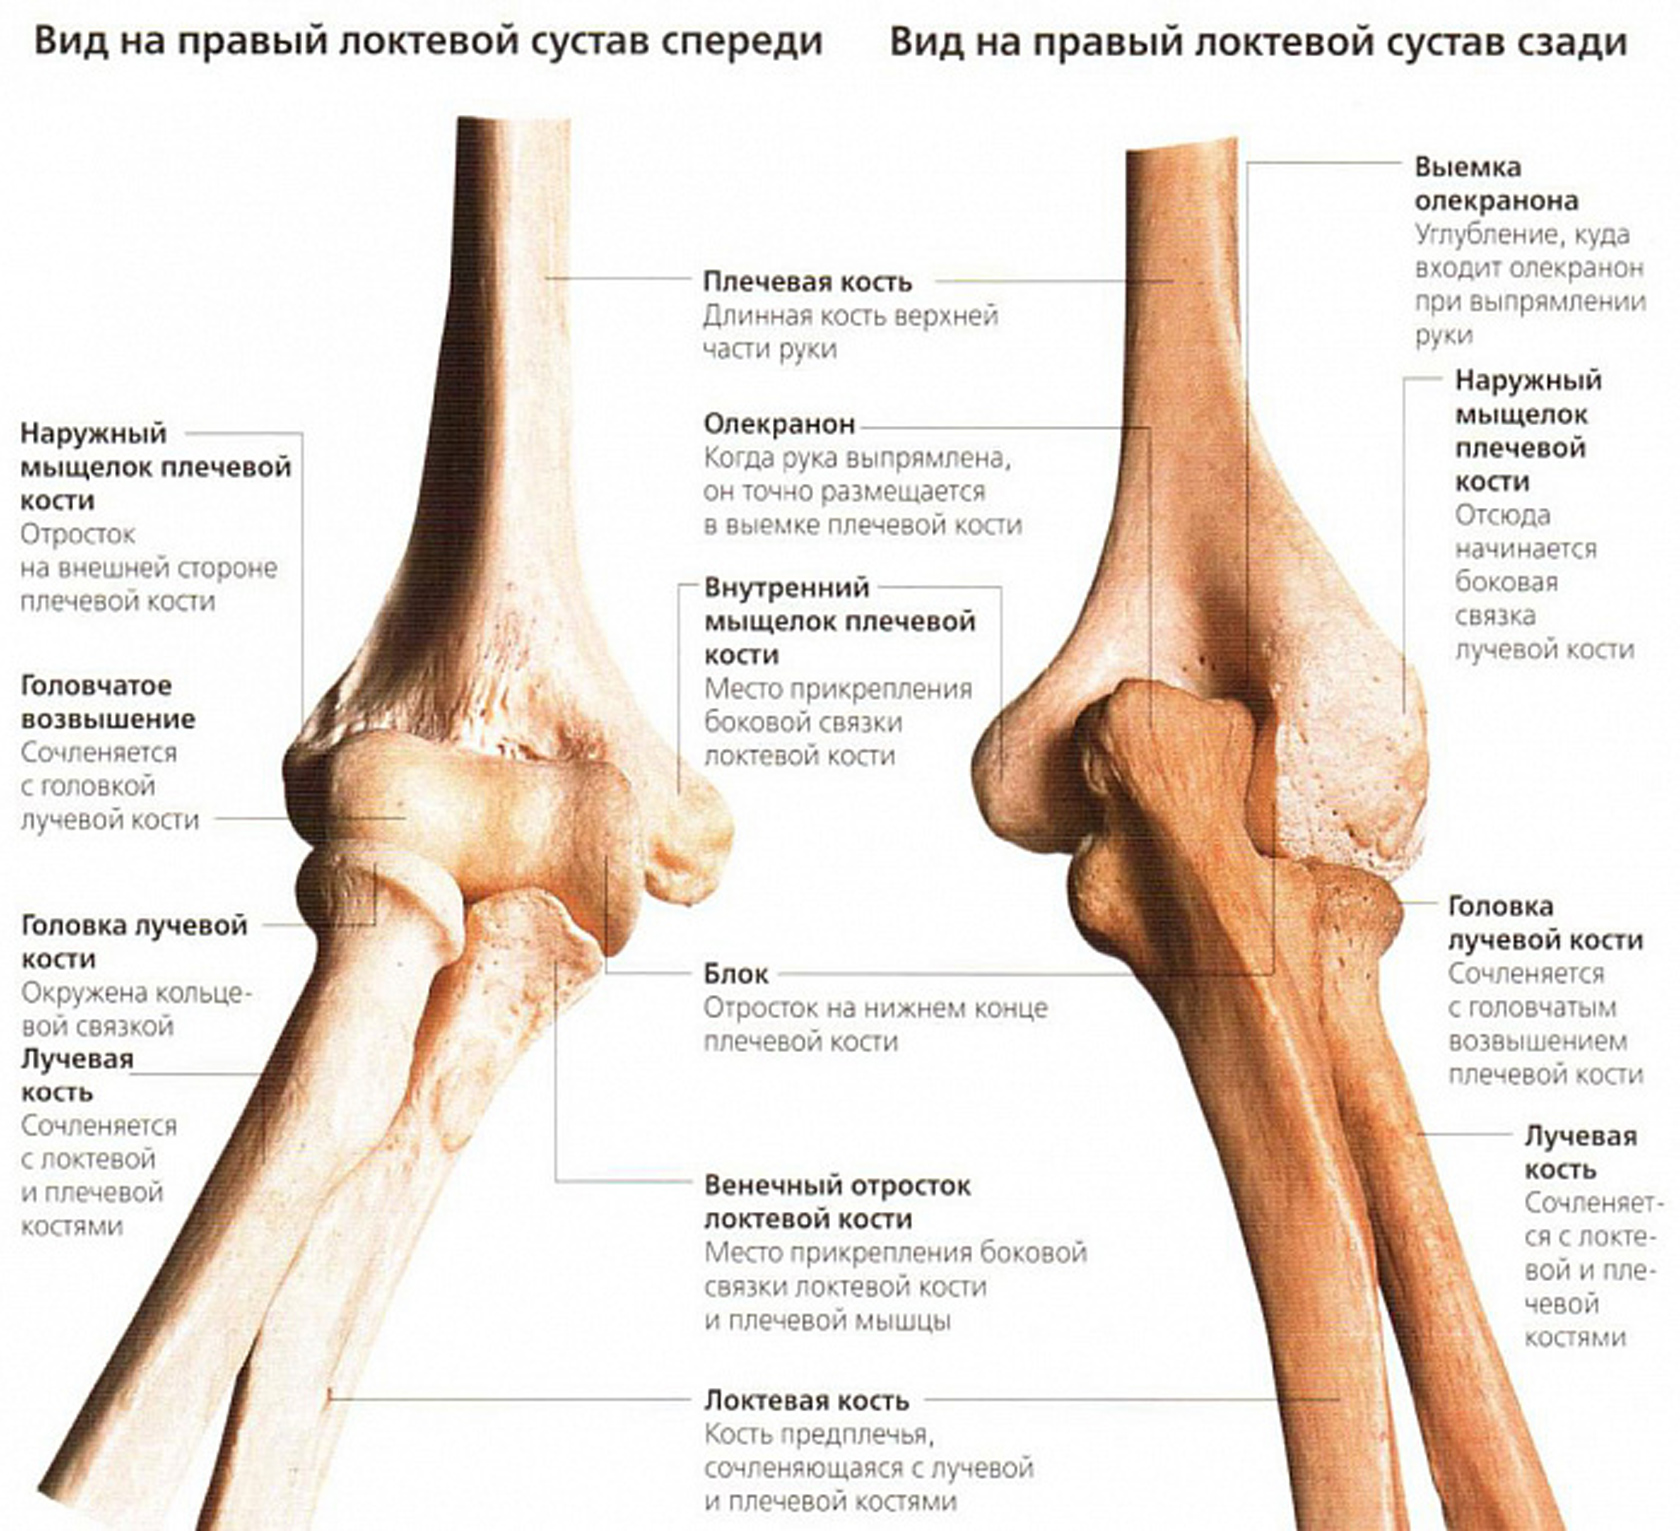 Латерального мыщелка. Локтевой сустав анатомия строение кости. Венечный отросток локтевого сустава. Плечевая кость анатомия мыщелок. Кости составляющие локтевой сустав.